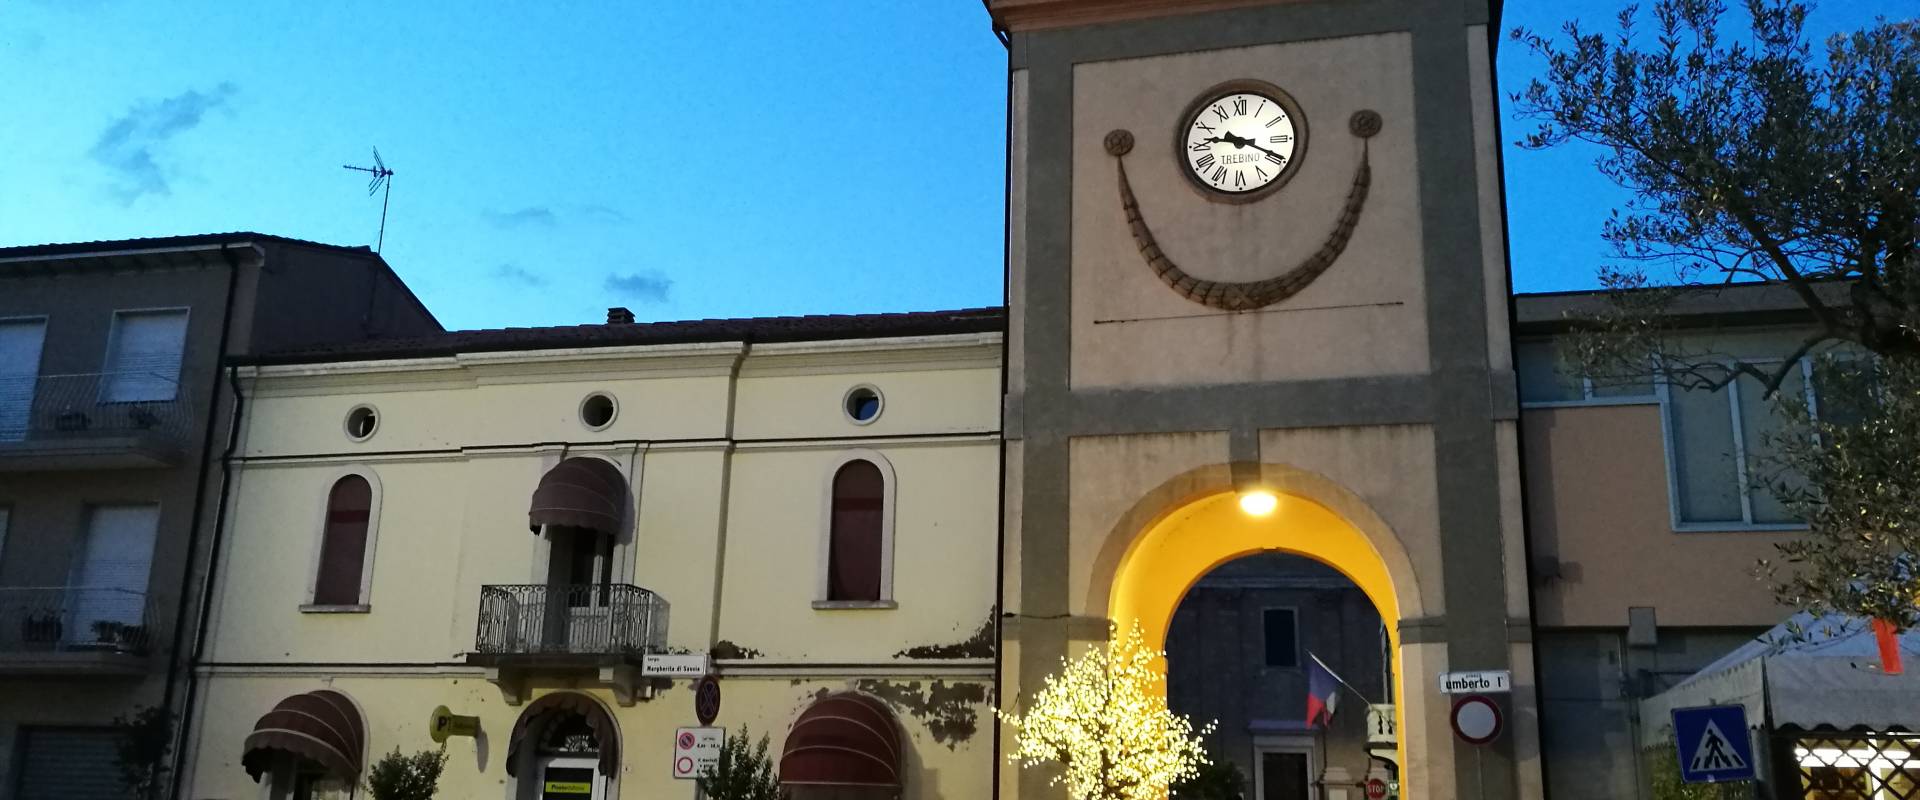 Torre civica (o Torre dell'Orologio) - Sant'Agata sul Santerno (RA) 2 foto di Enea Emiliani